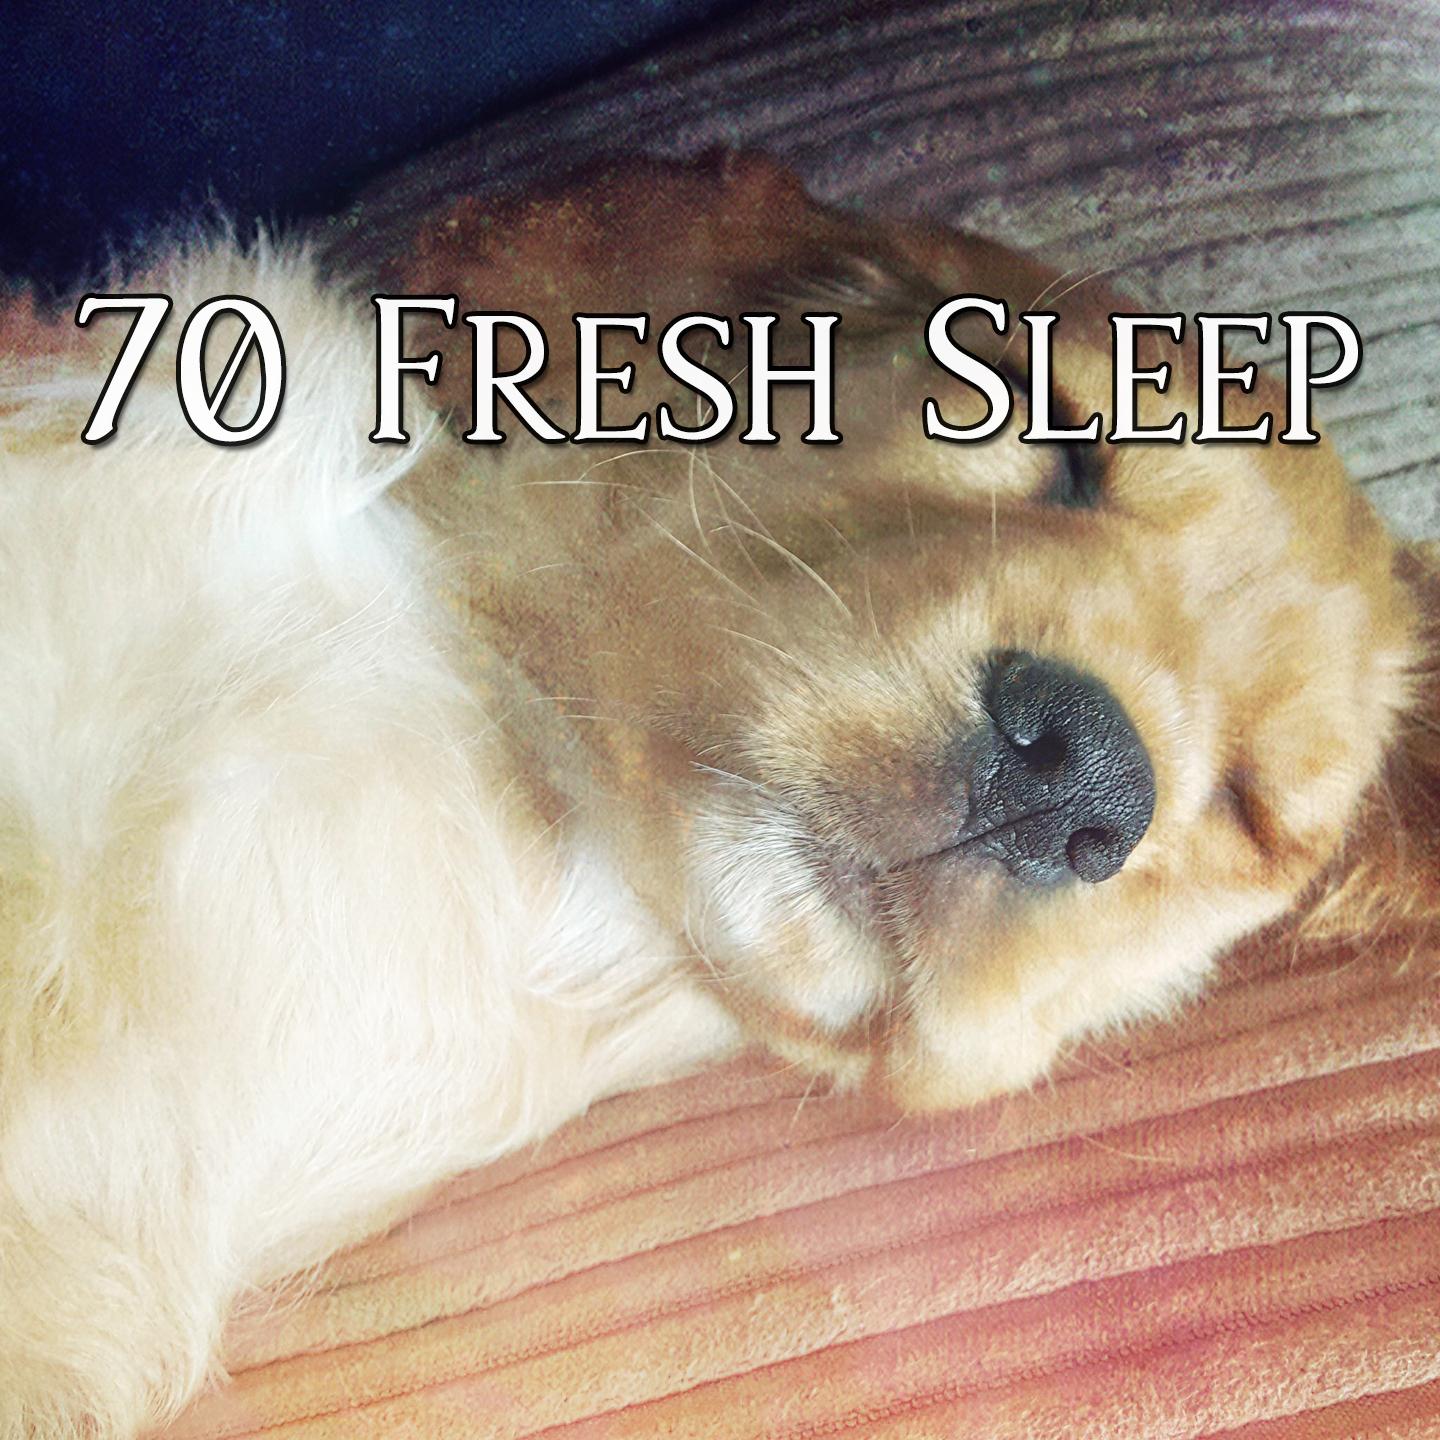 70 Fresh Sleep